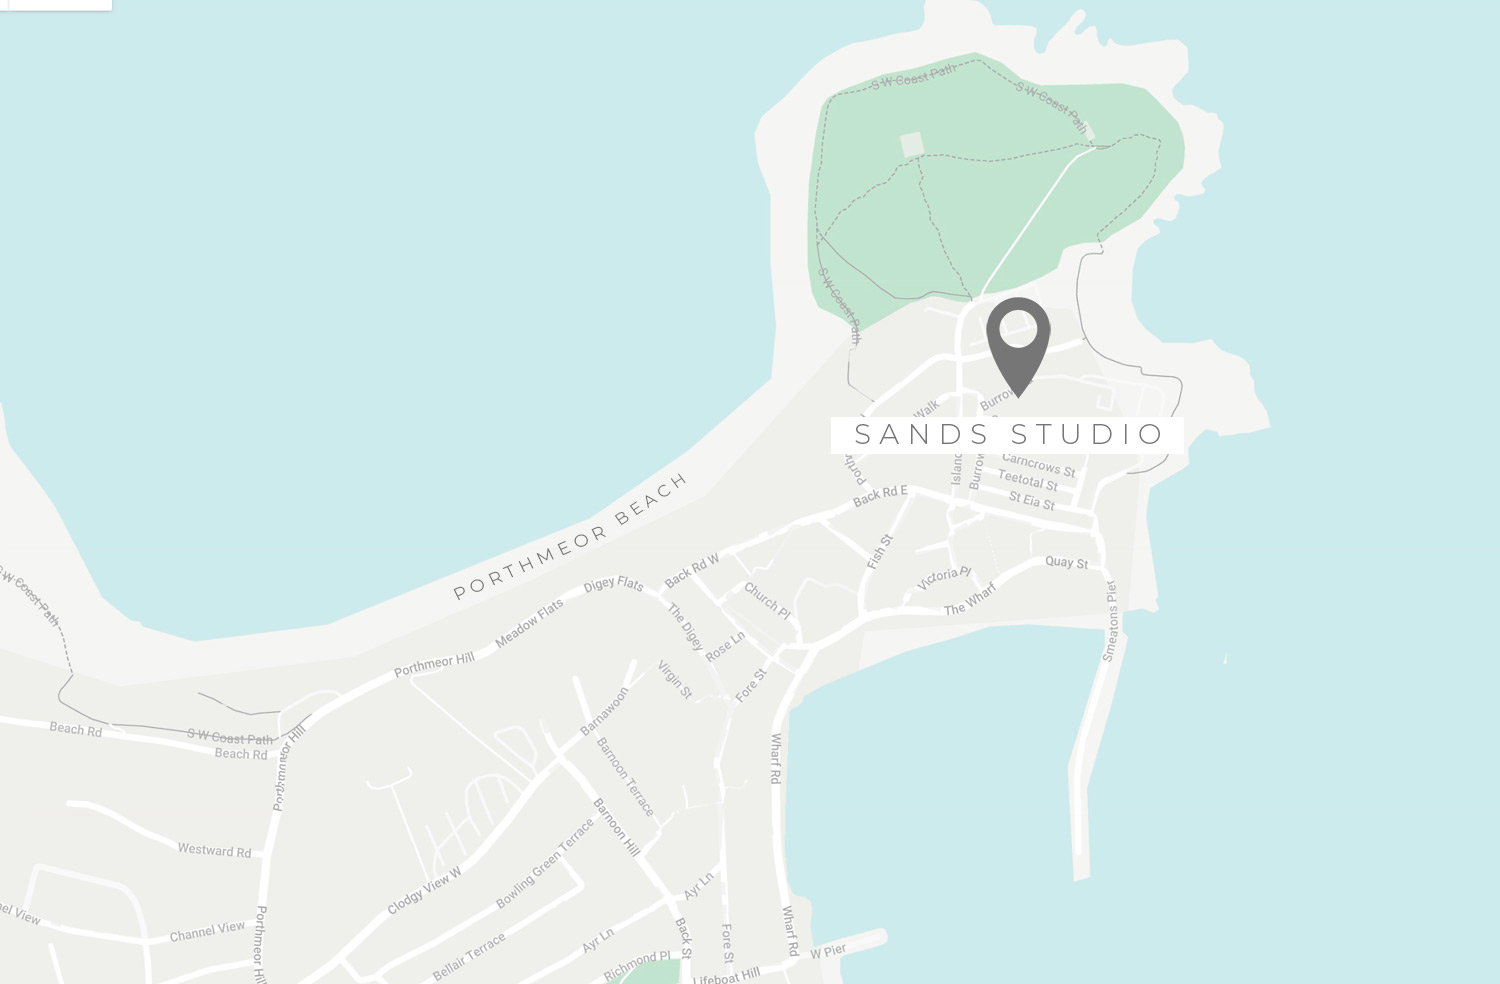 sands-studio-st-ives-map